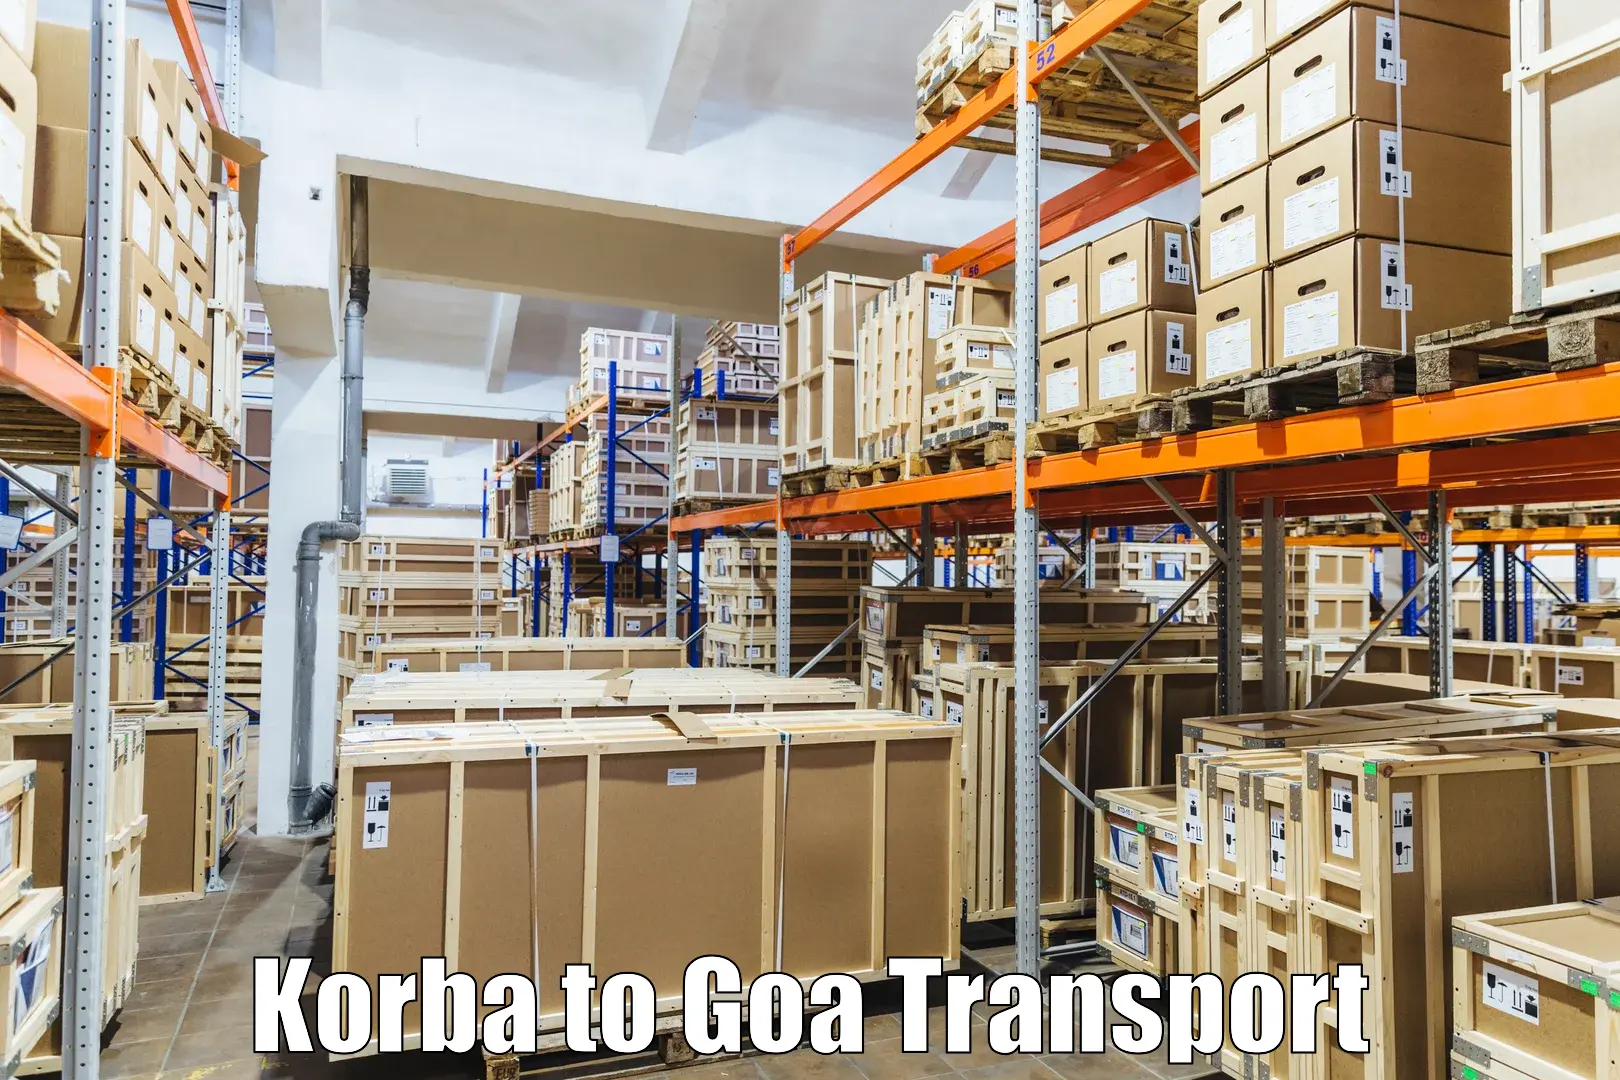 Online transport booking Korba to Panjim